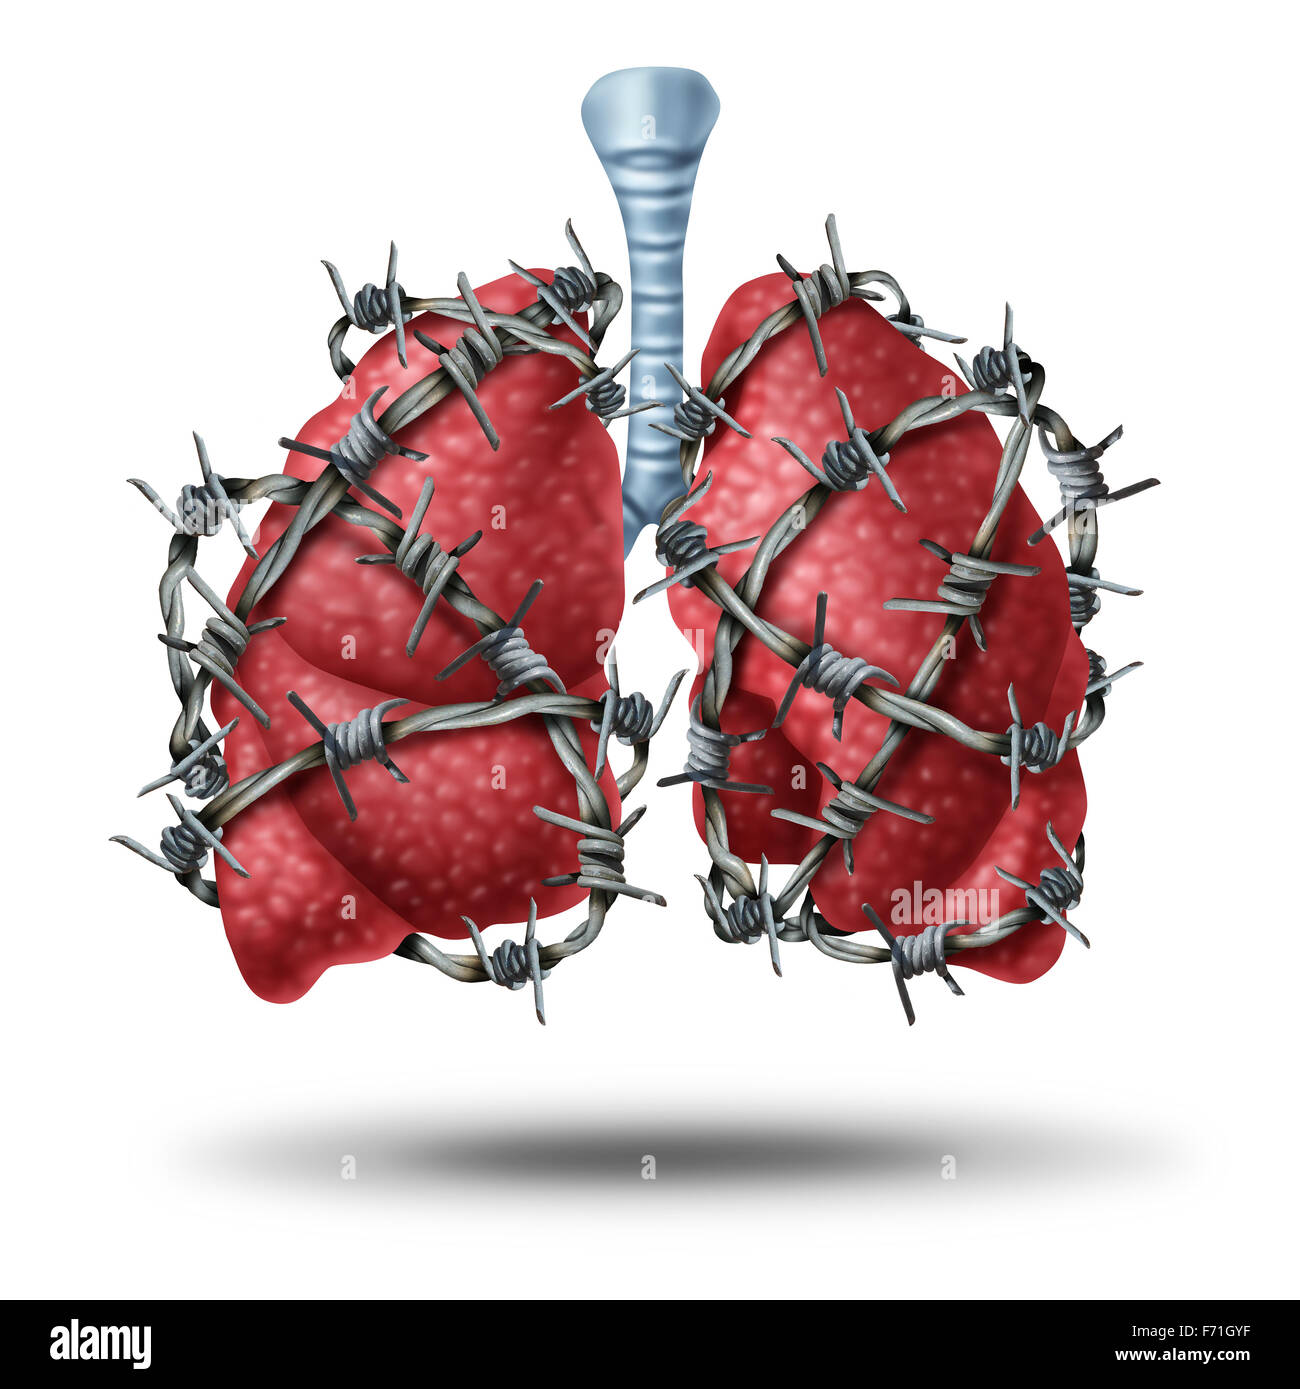 Concepto médico dolor pulmonar como un par de pulmón humano órgano envuelto con peligrosos o alambradas de púas como un símbolo de salud de problemas cardiovasculares como la fibrosis quística o dolor en el pecho la metáfora. Foto de stock